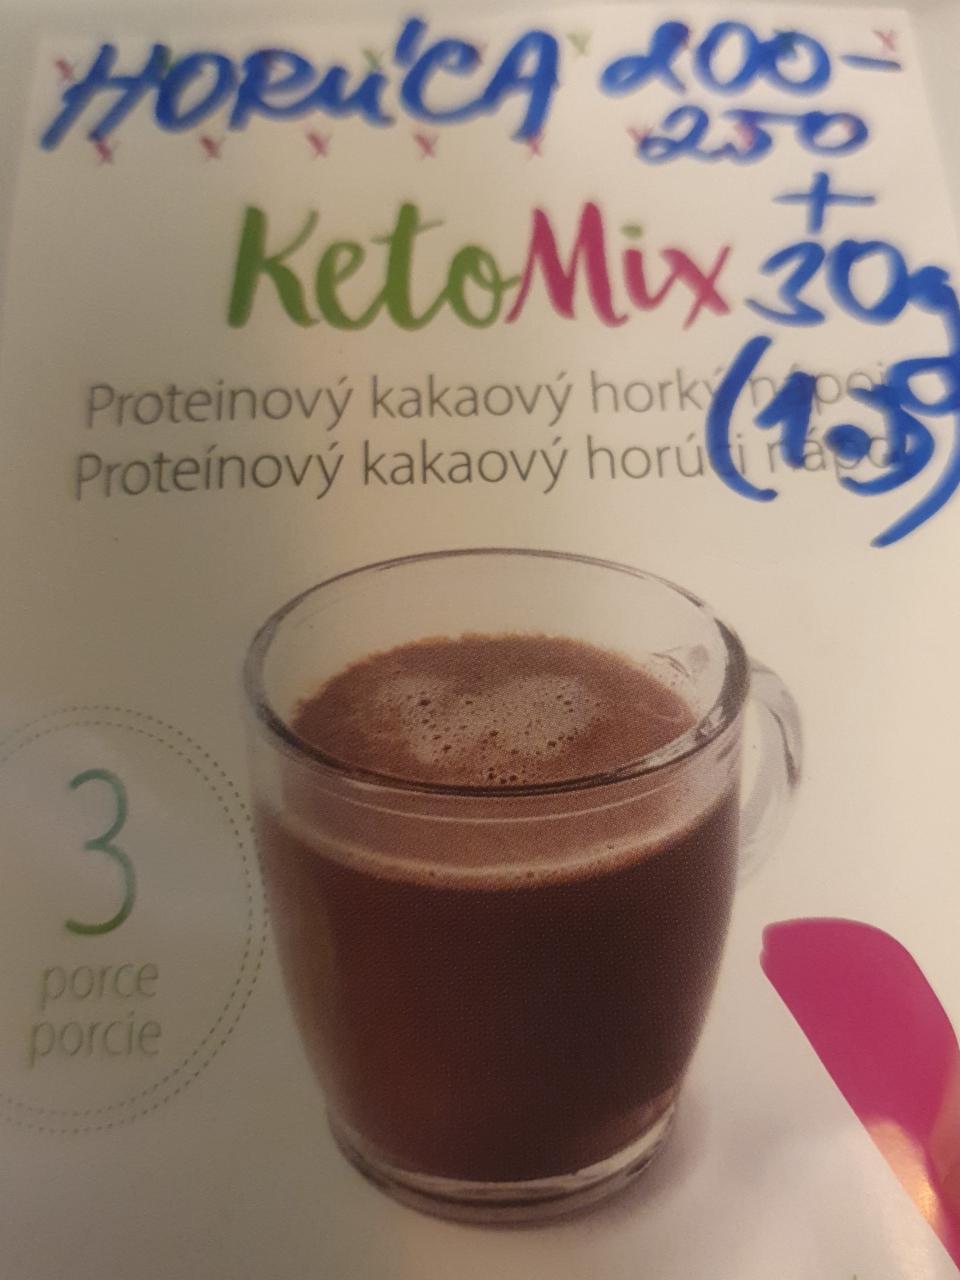 Fotografie - Proteinový kakaový horúci nápoj KetoMix 